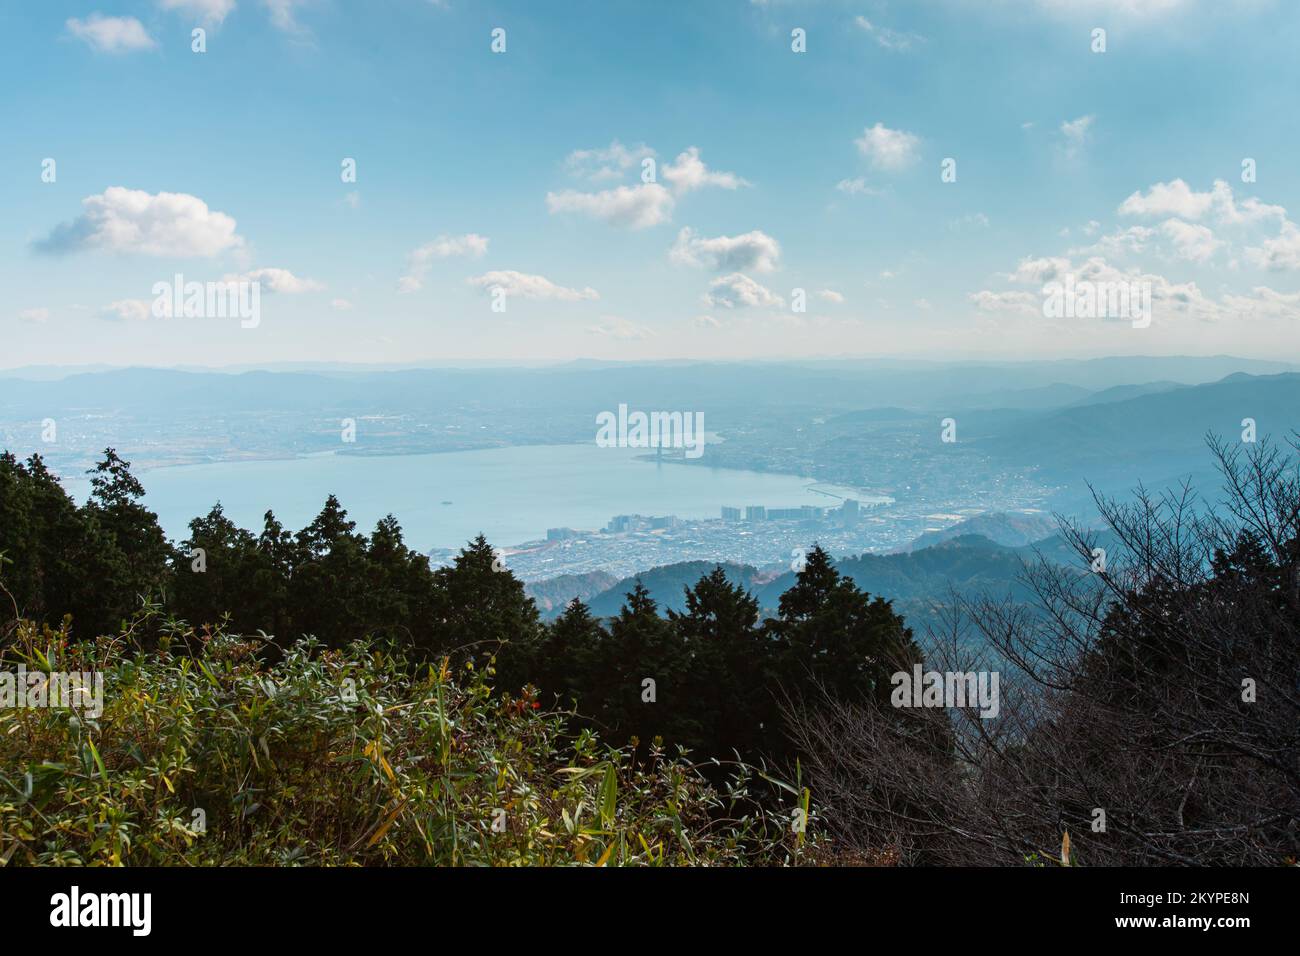 Paesaggio lato sud ovest del lago Biwa (Biwako) e paesaggio urbano di Otsu-shi da una cima di montagna di Hieizan (Monte Hiei), Shiga, Giappone Foto Stock